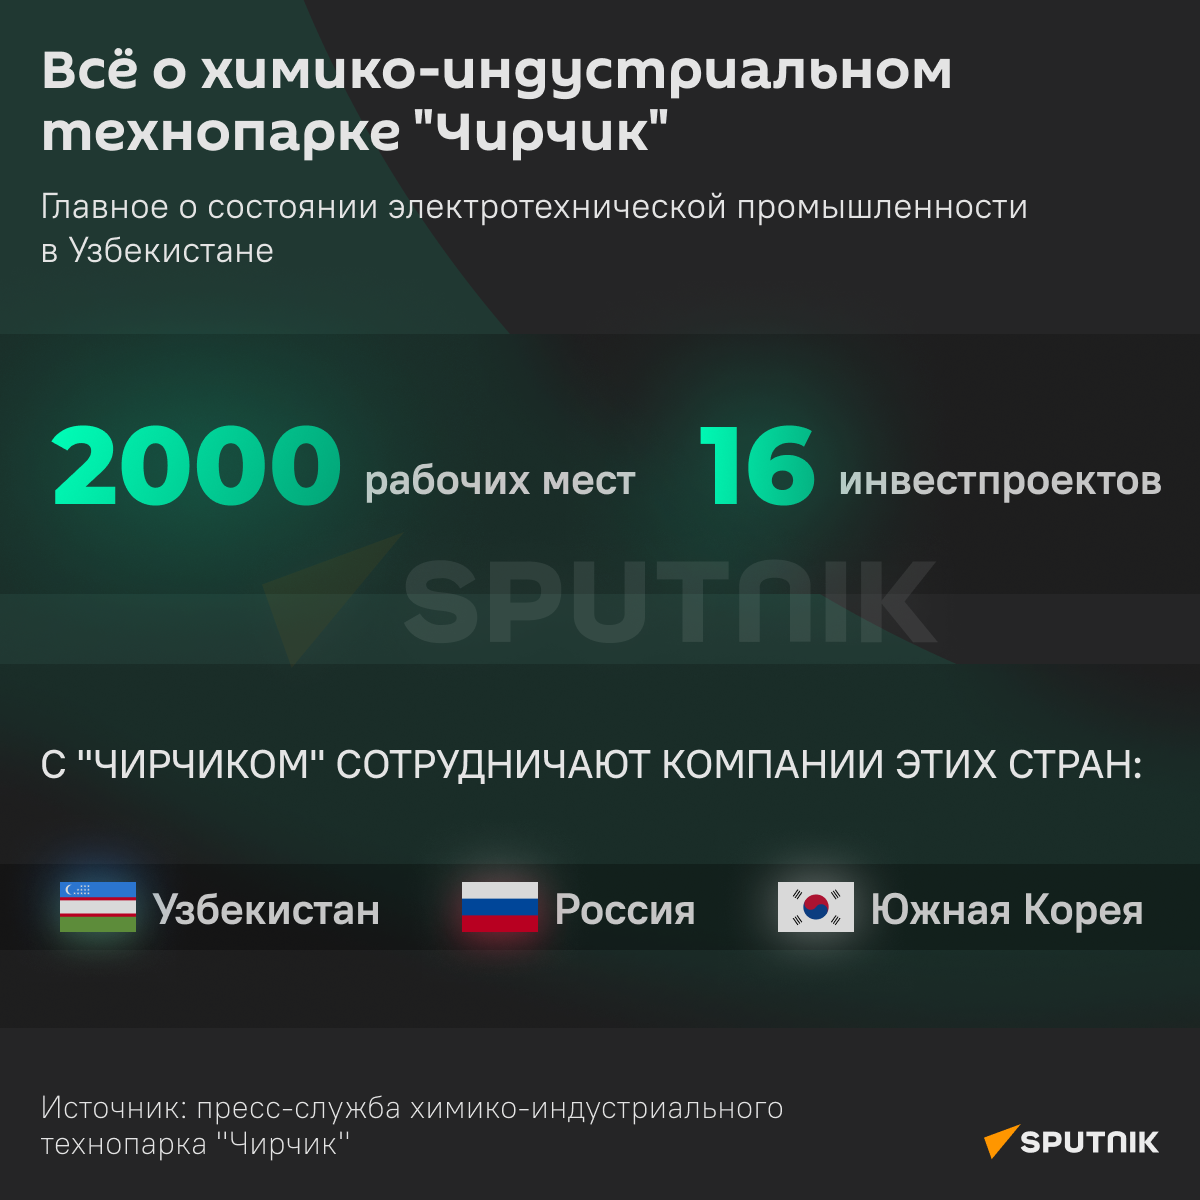 Технопарк Чирчик инфографика 1 - Sputnik Узбекистан